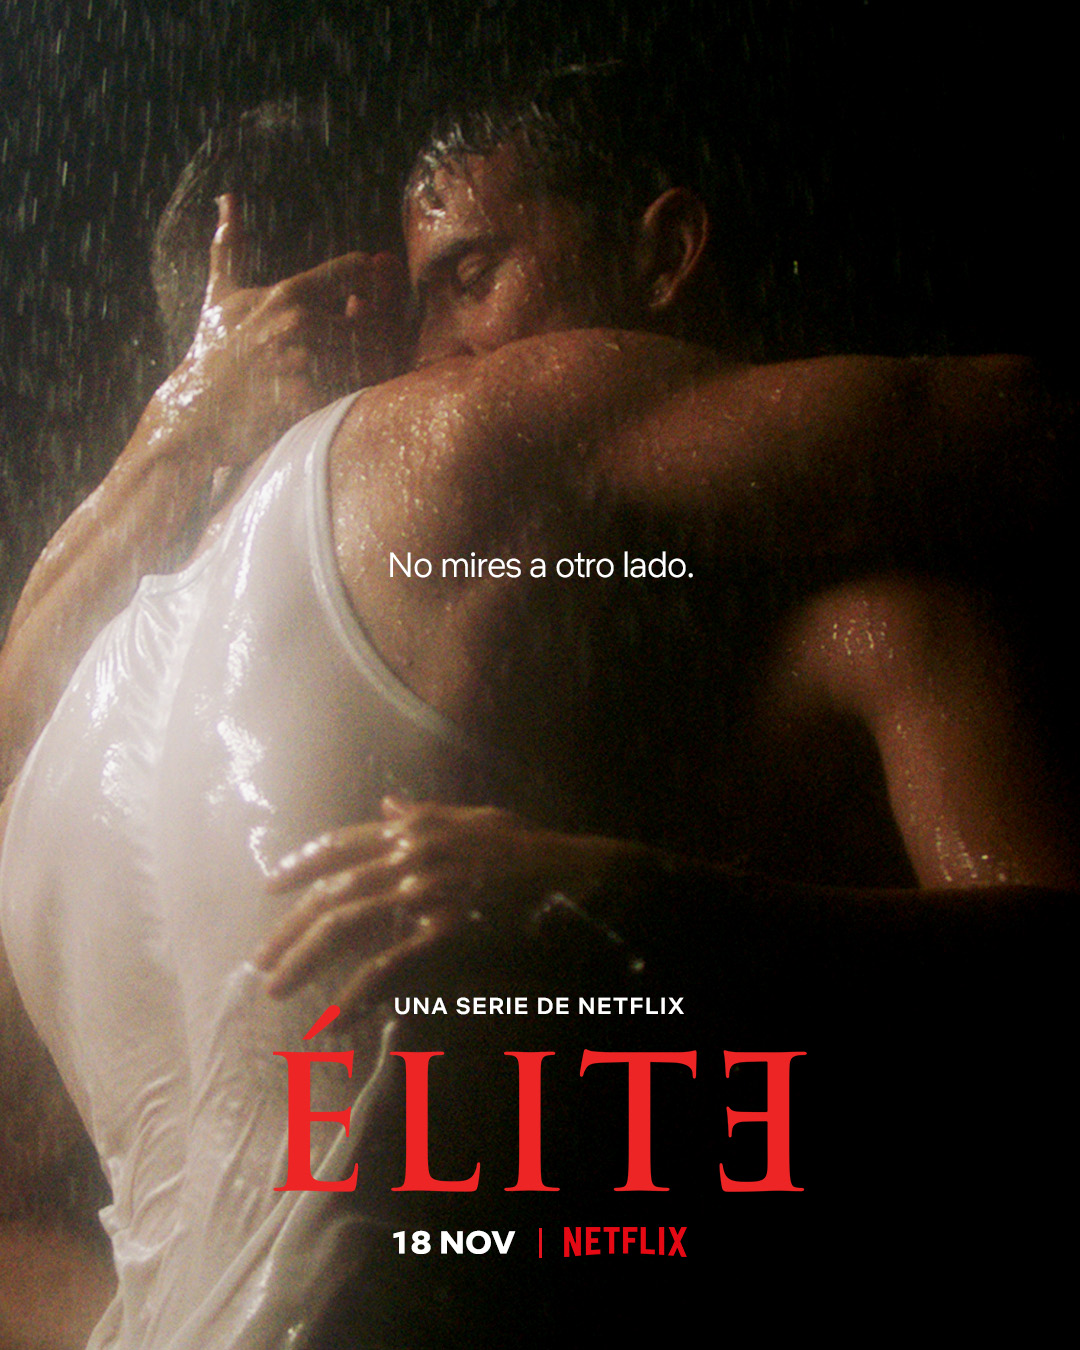 Netflix libera teaser estendido de "Elite" na versão SEM CENSURA